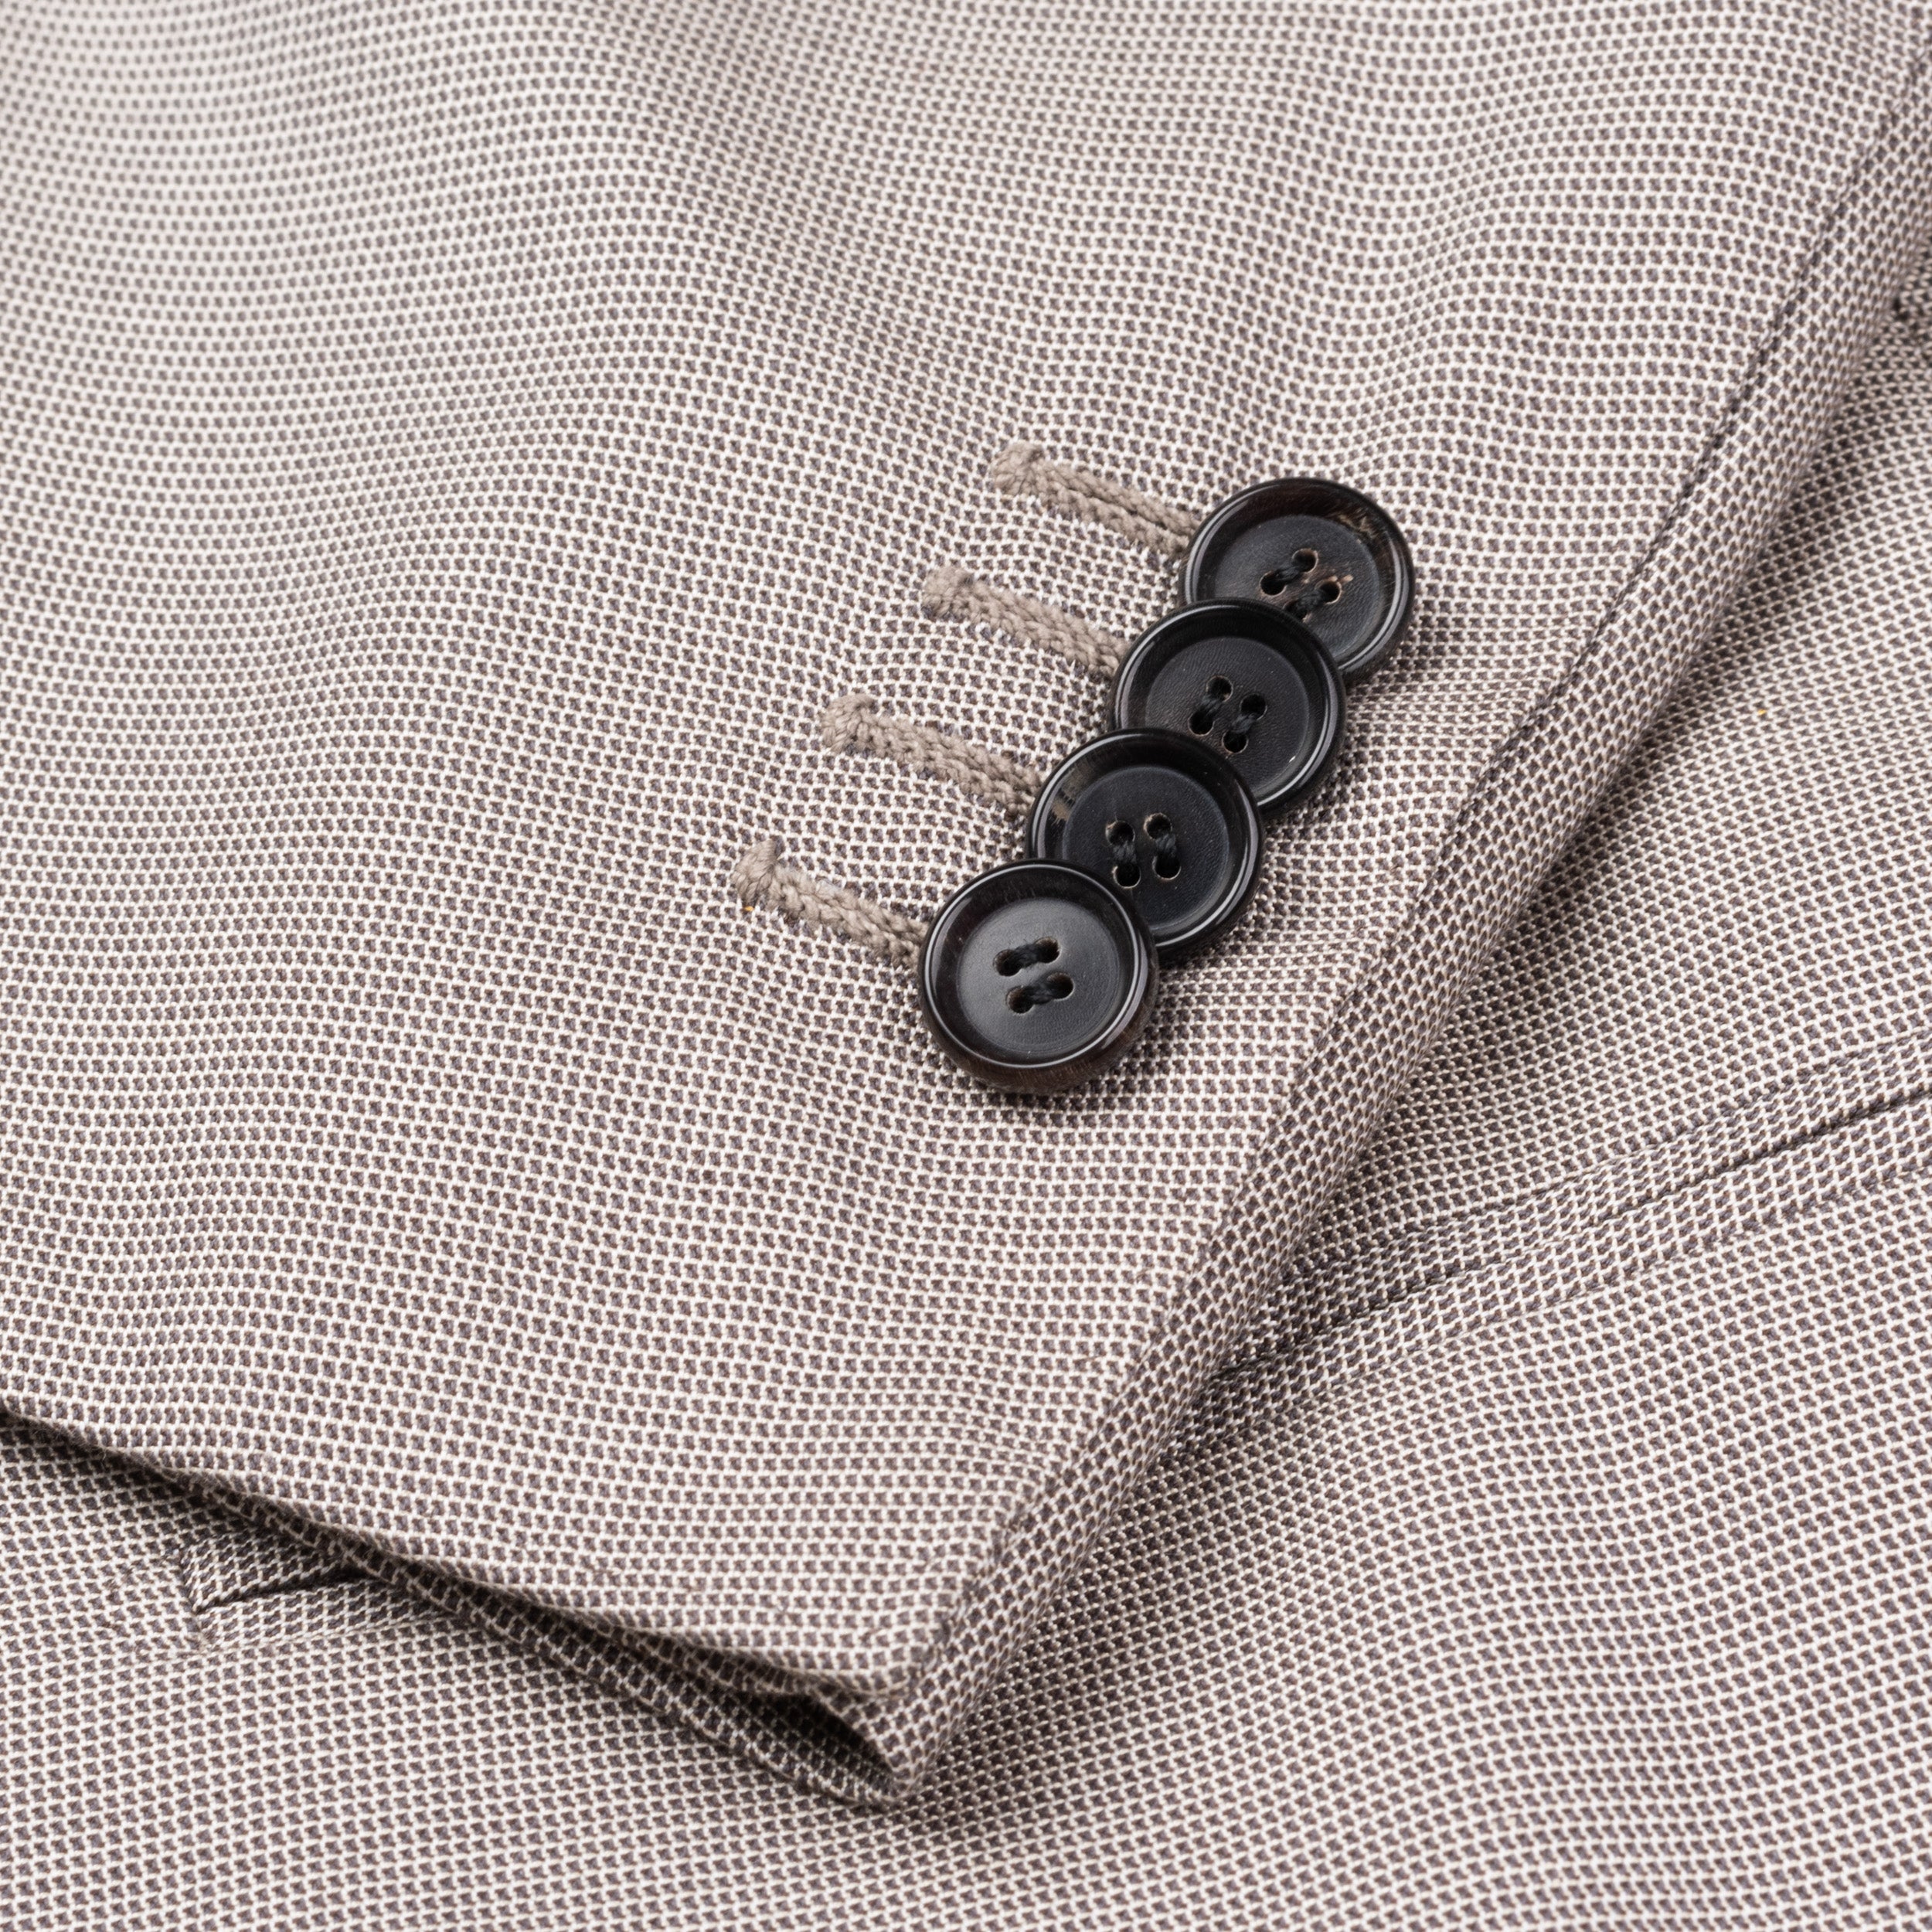 CESARE ATTOLINI Napoli Gray Cotton Silk Double Breasted Blazer Jacket NEW